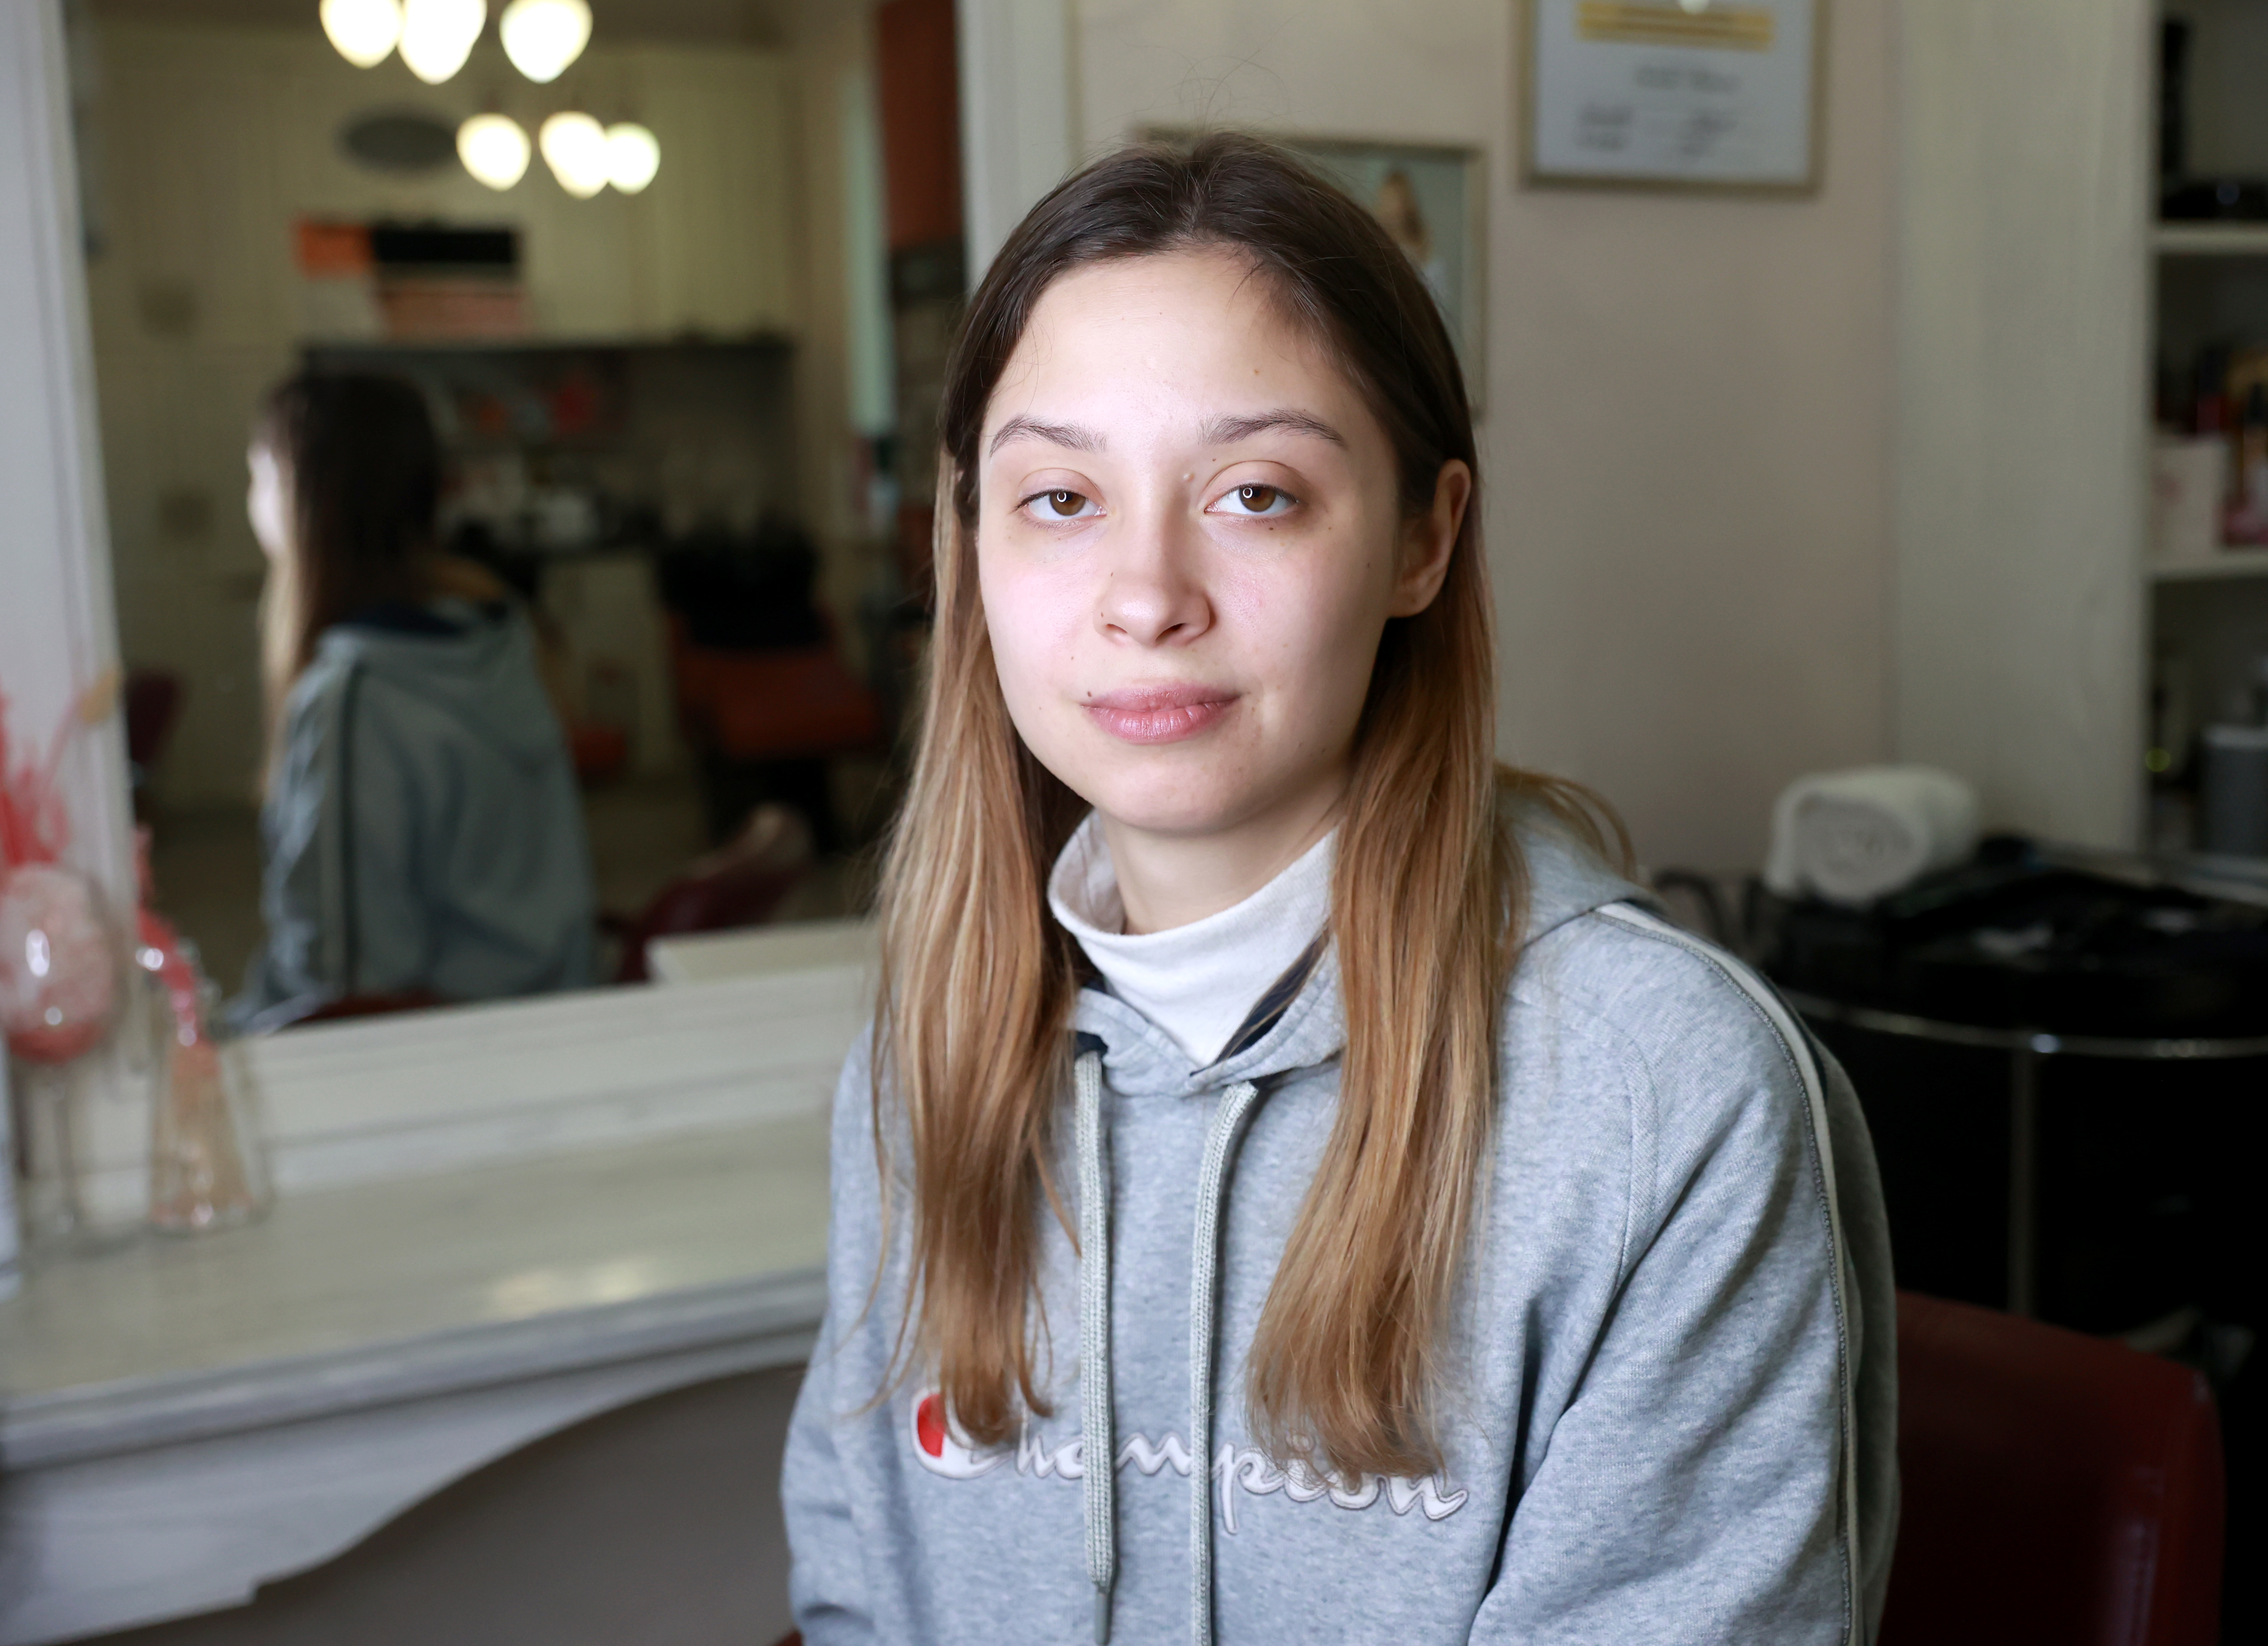 Преображение 2: Как ярославскую студентку перевоплотили в деловую девушку